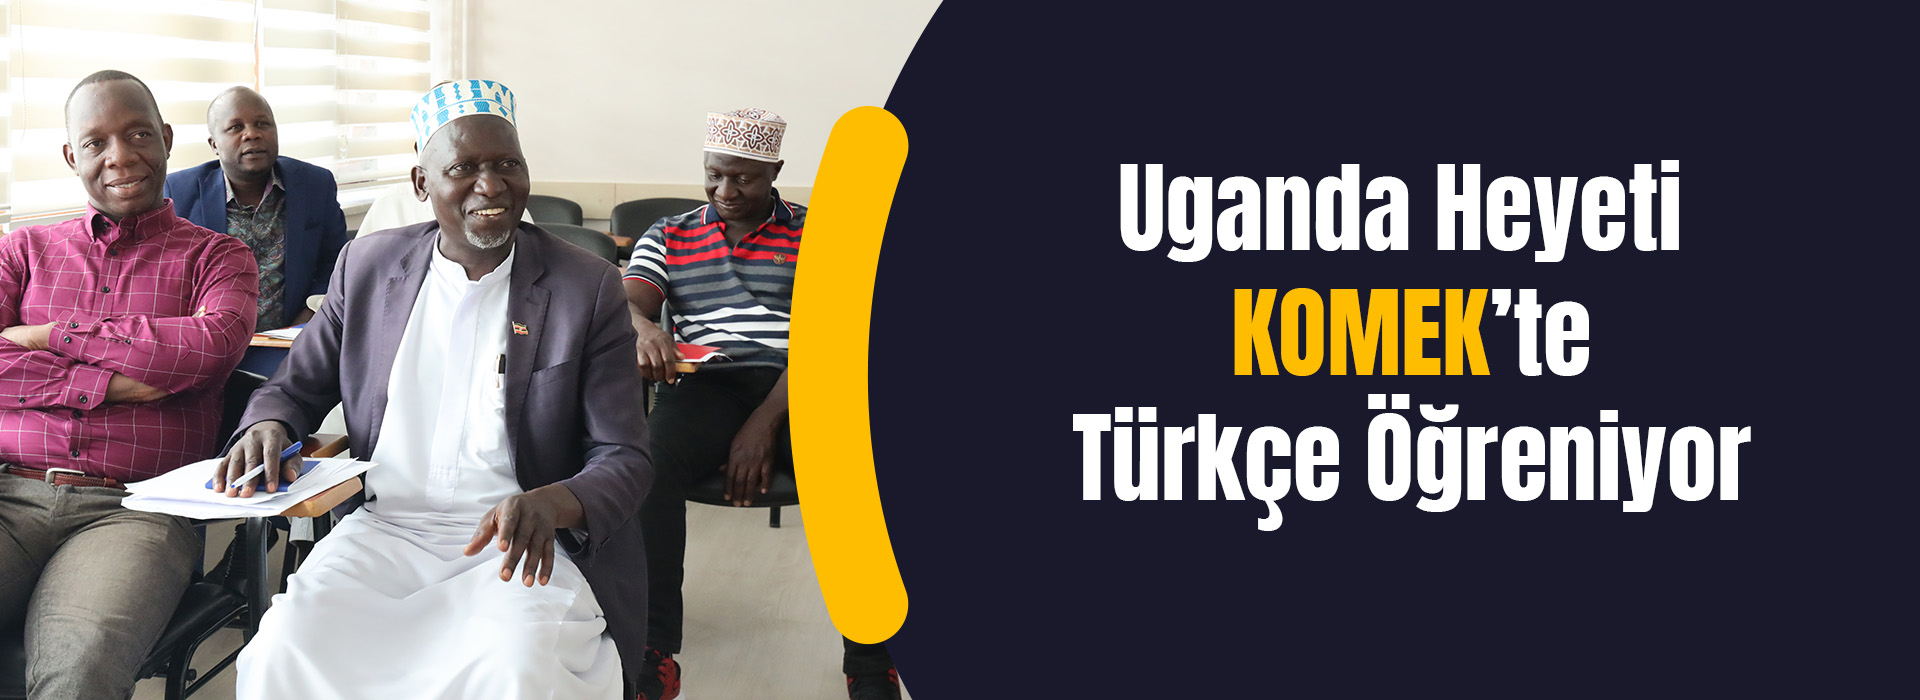 Uganda Heyeti KOMEK' te Türkçe Öğreniyor